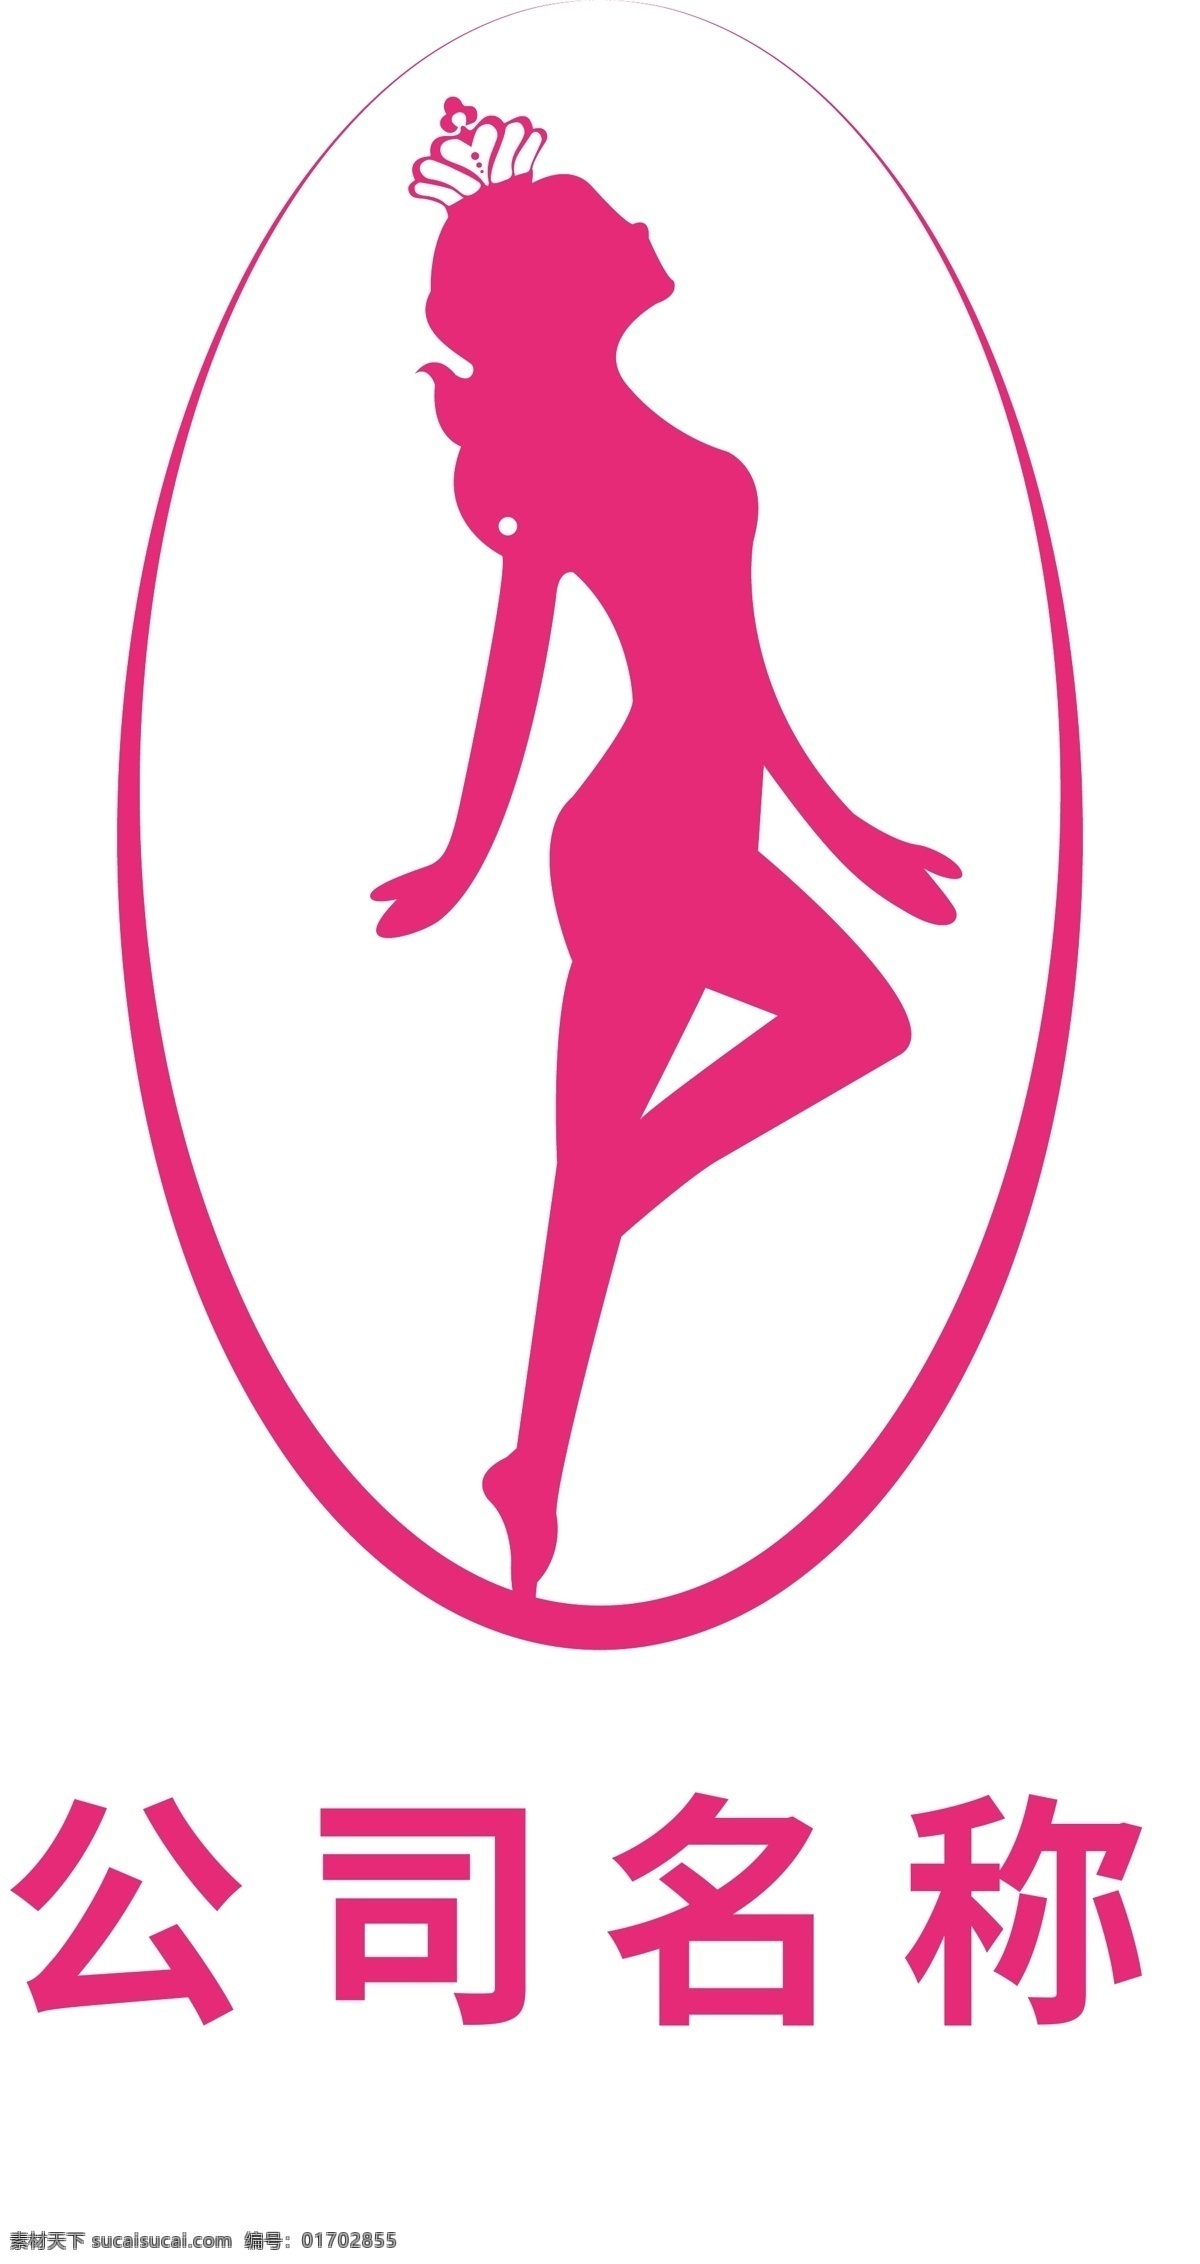 瘦身logo 瘦身 美容 养生 标志 logo 标识 vi 公司logo 企业logo 美容logo logo设计